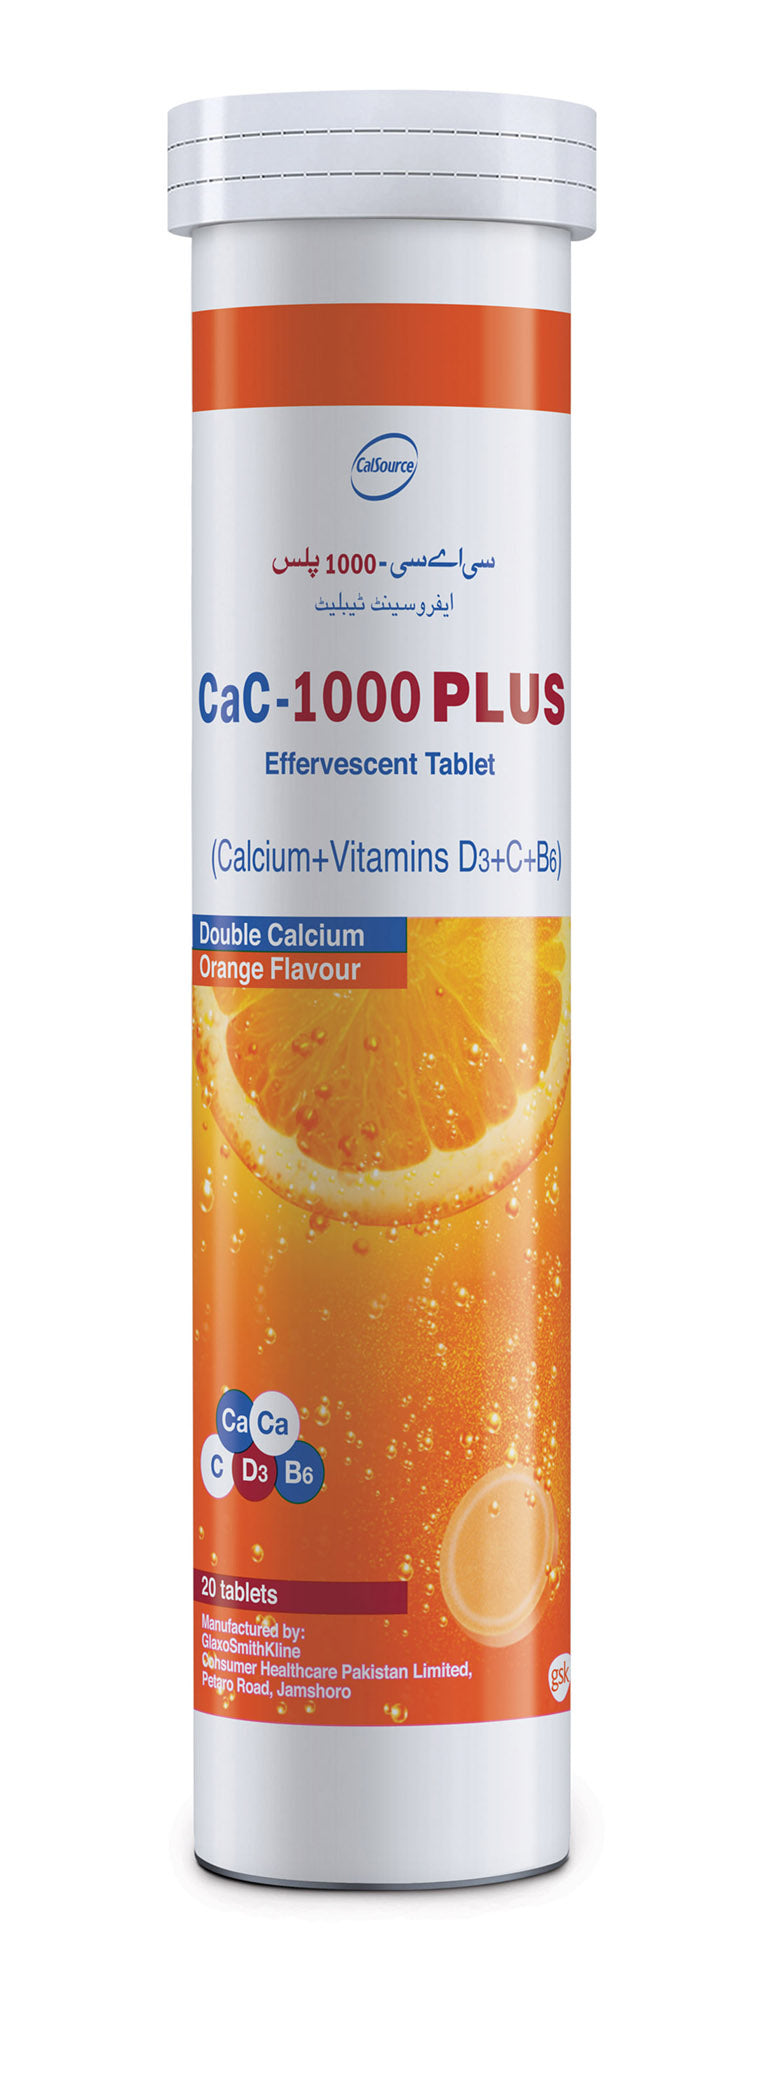 Cac-1000 Plus Orange Flavour Tab 20-s